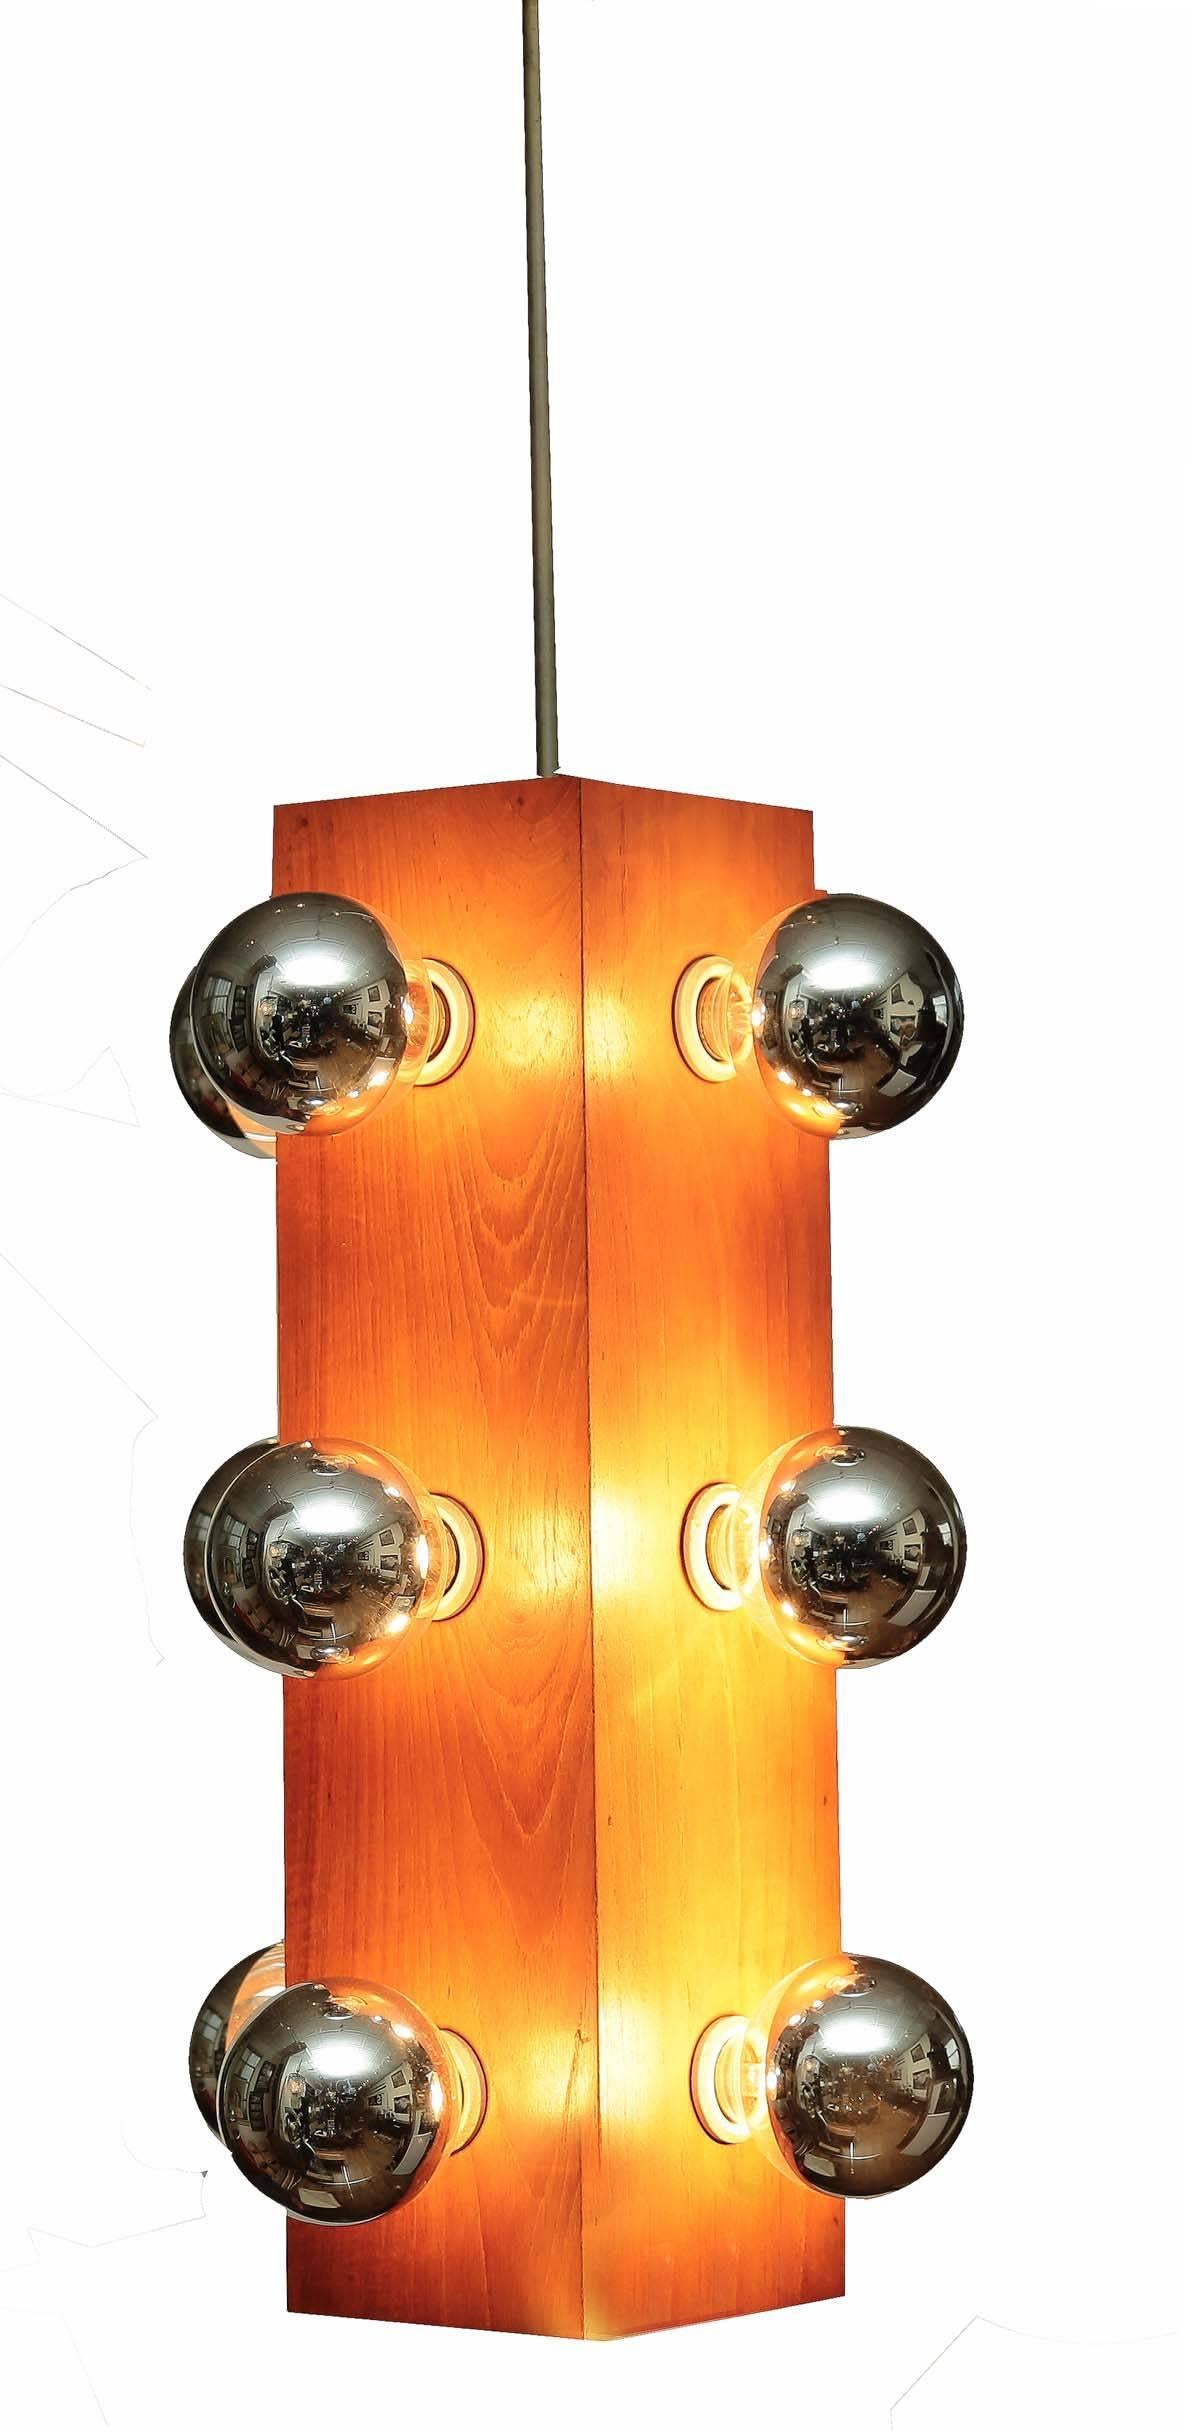 Beau luminaire du milieu du siècle, douze ampoules offrent une grande lumière ; la base en bois de rose est en parfait état de fonctionnement.